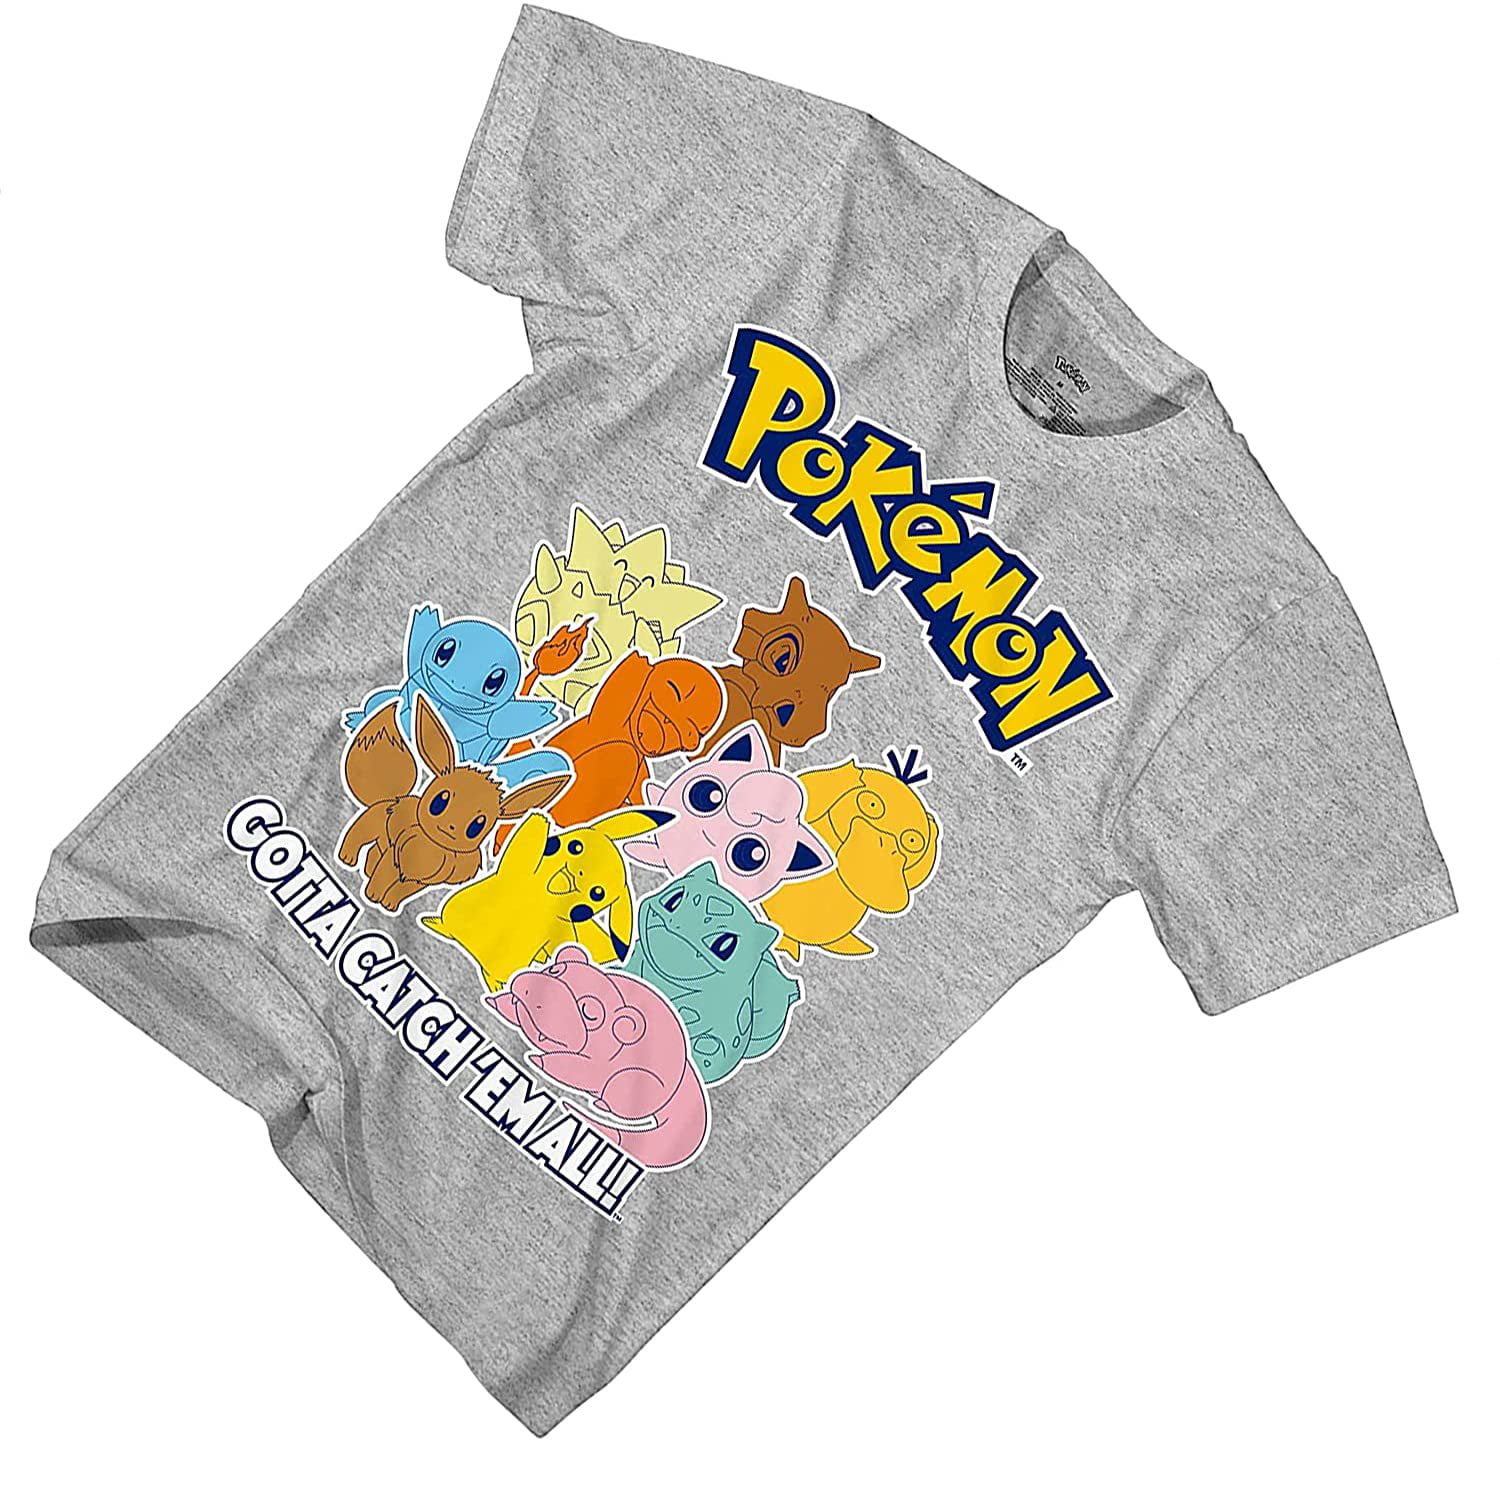 Homies Bakery - Gotta catch 'em all! Pokémon/Pikachu theme